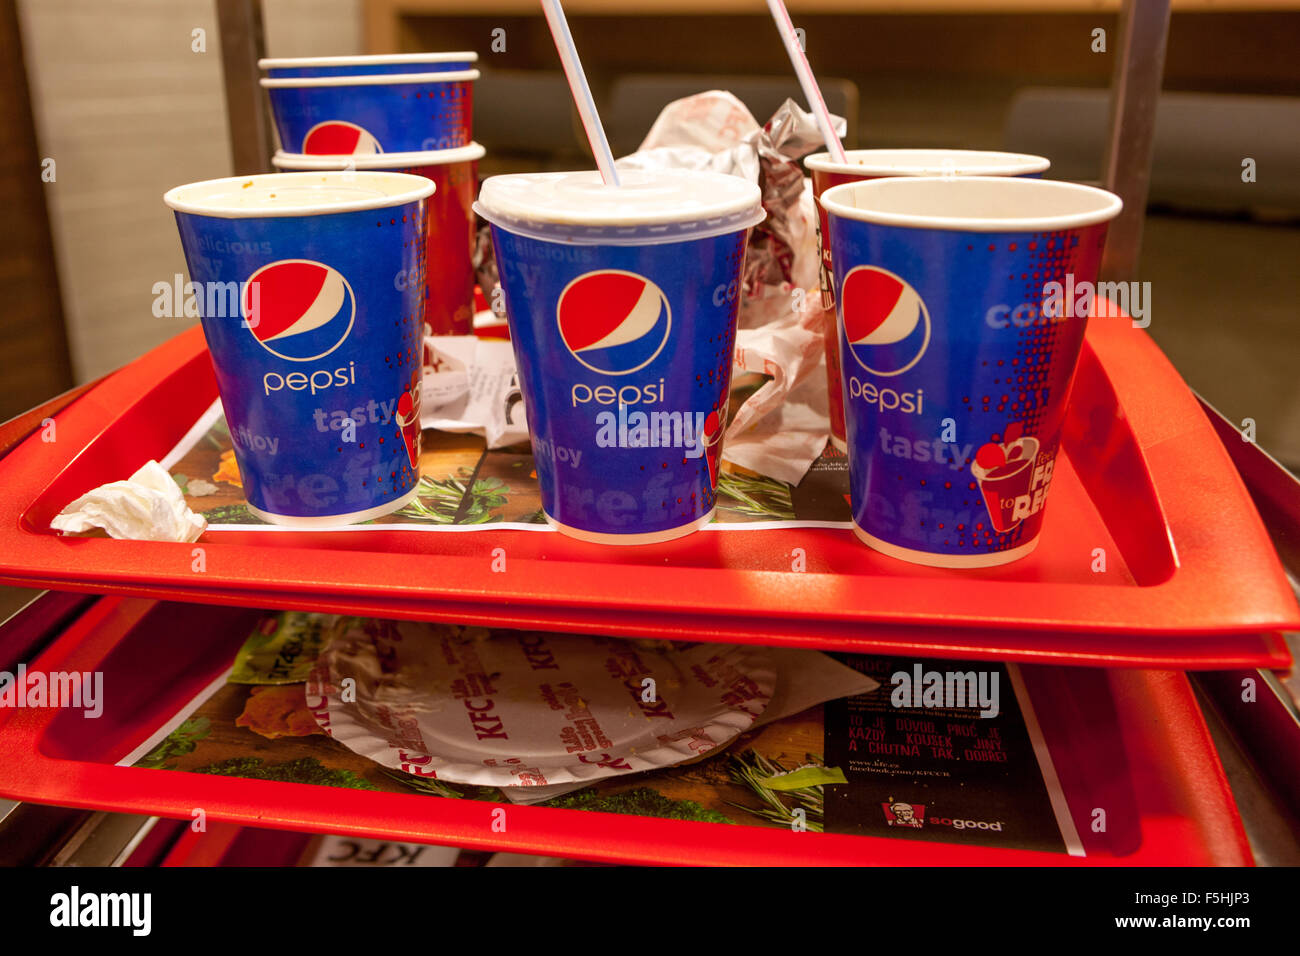 Essensreste auf einem Tablett, Pepsi-Becher, KFC-Abfall, Tschechische Republik Stockfoto